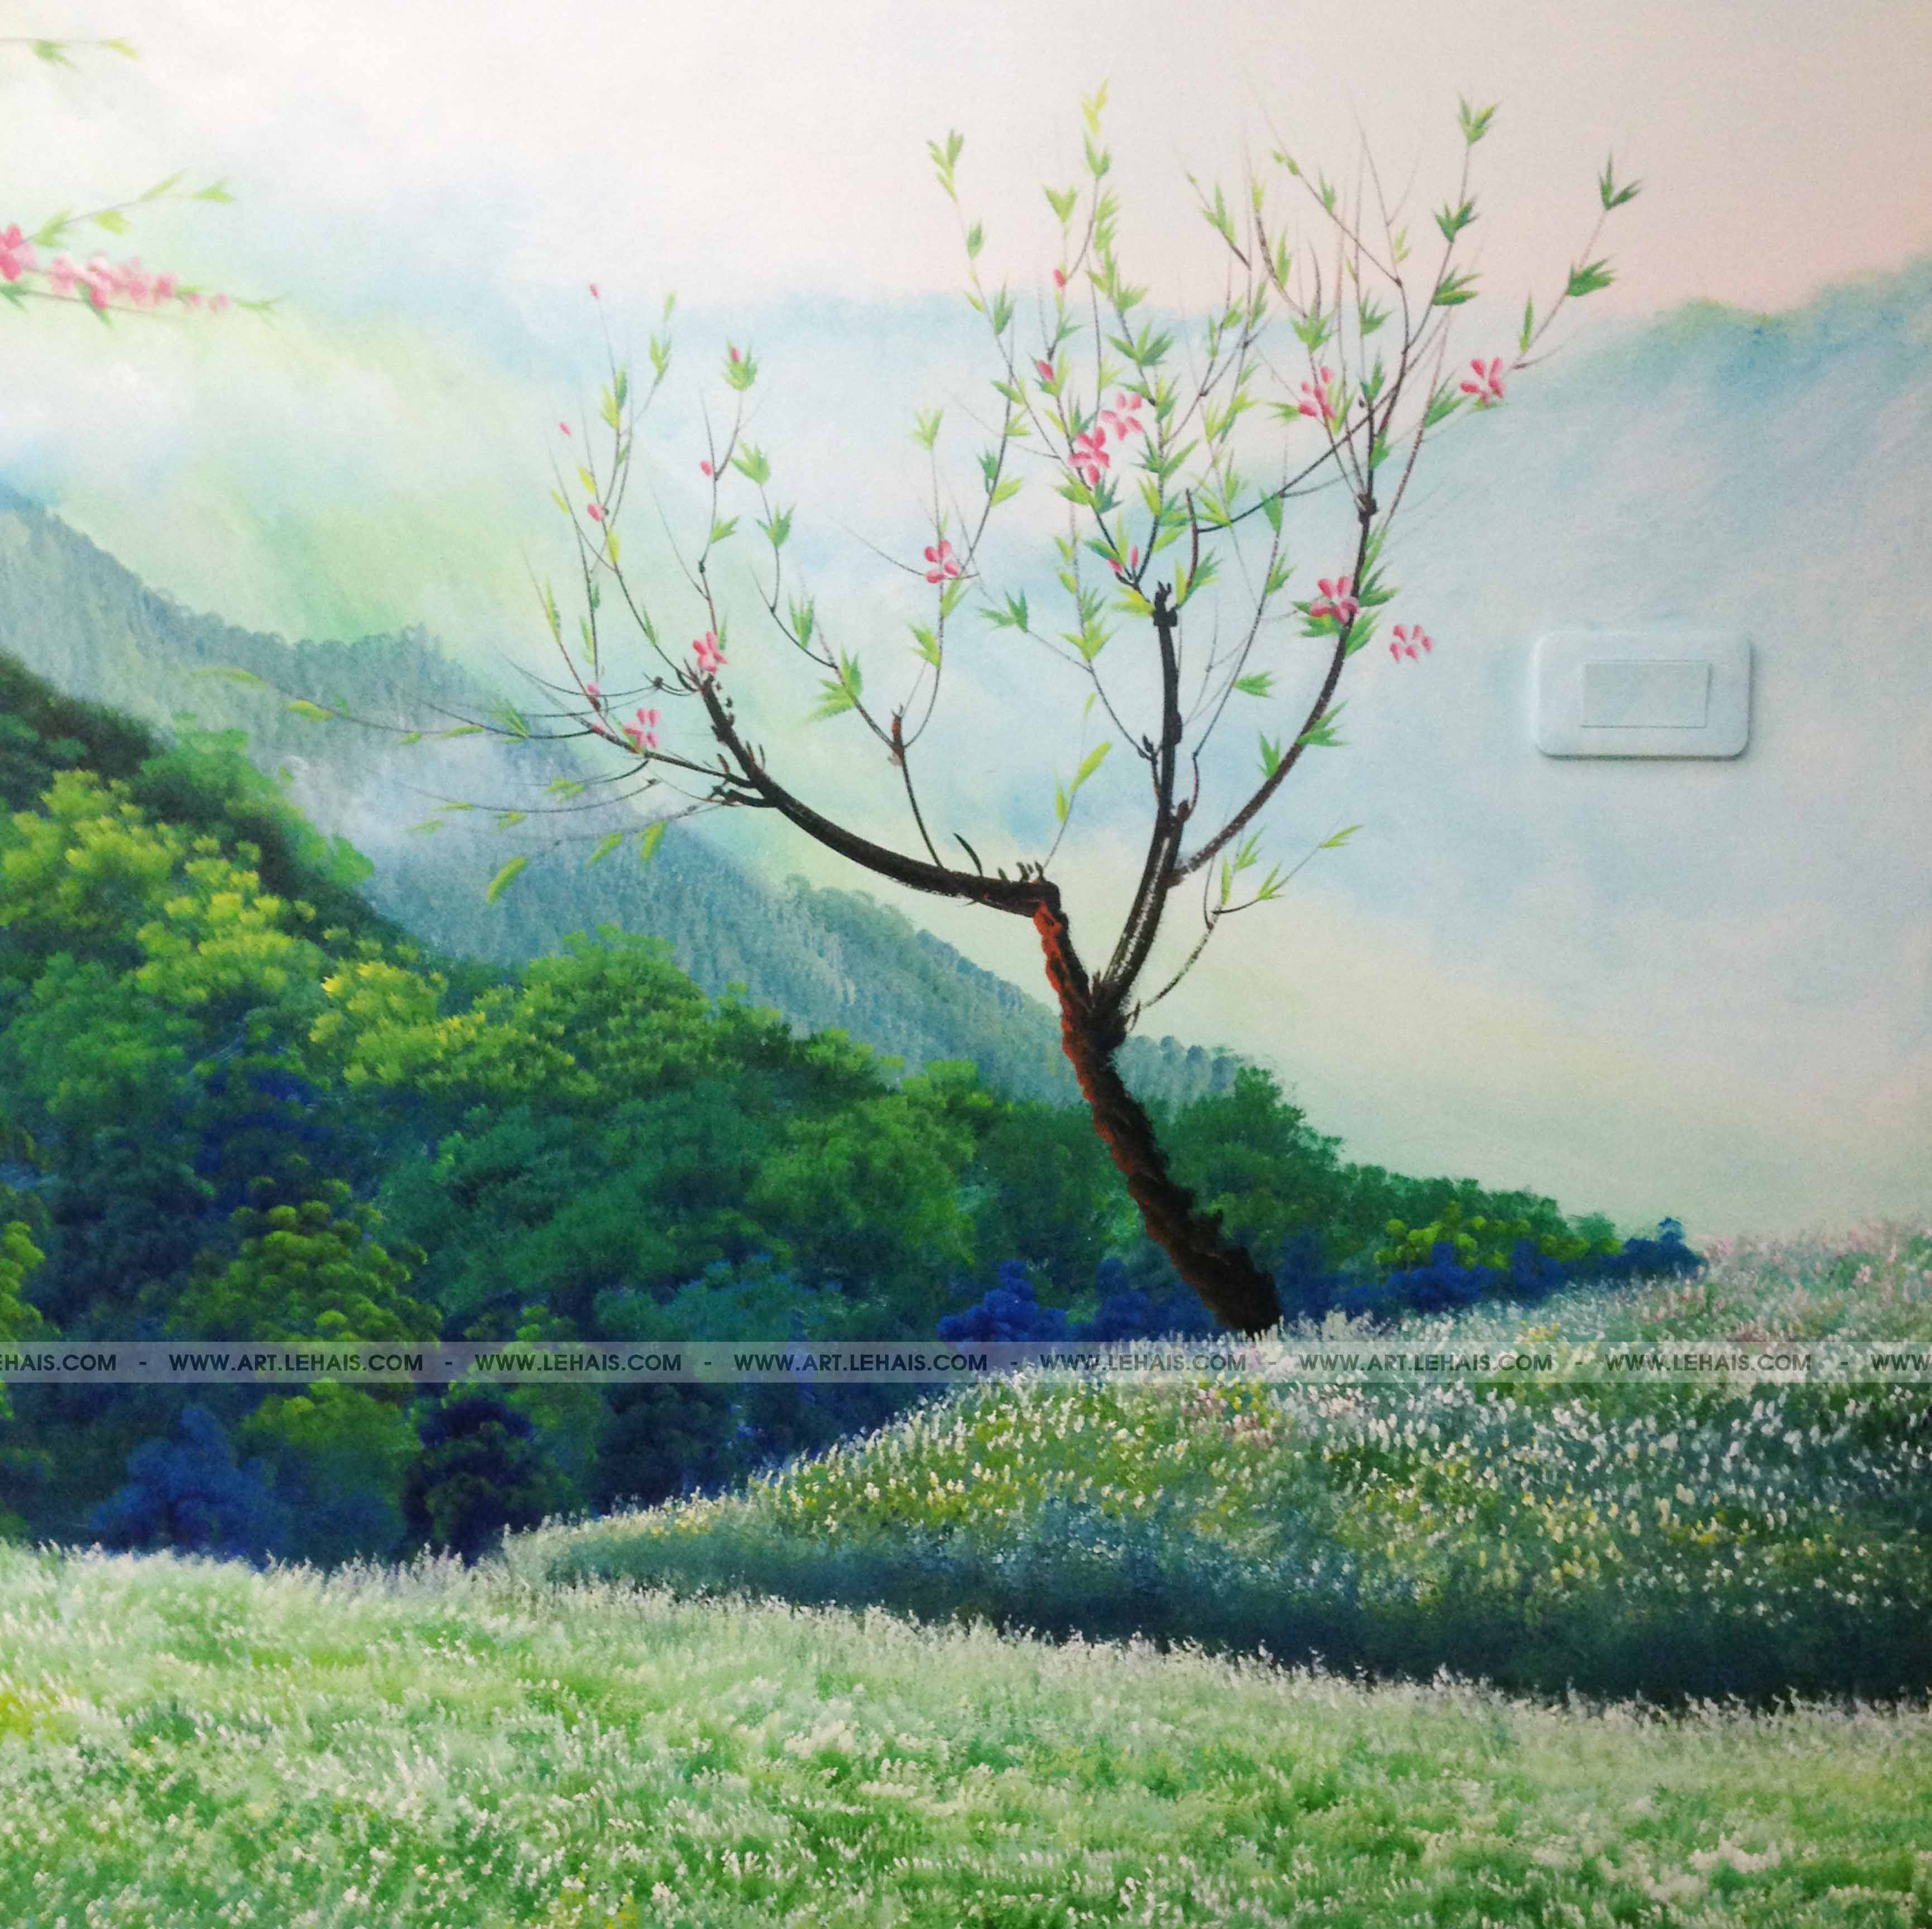 Vẽ tranh 3D phong cảnh núi rừng Tây Bắc tại tòa Star Tower, HN - TT55LHAR -  LEHAIS ART - TRANH NGHỆ THUẬT CAO CẤP